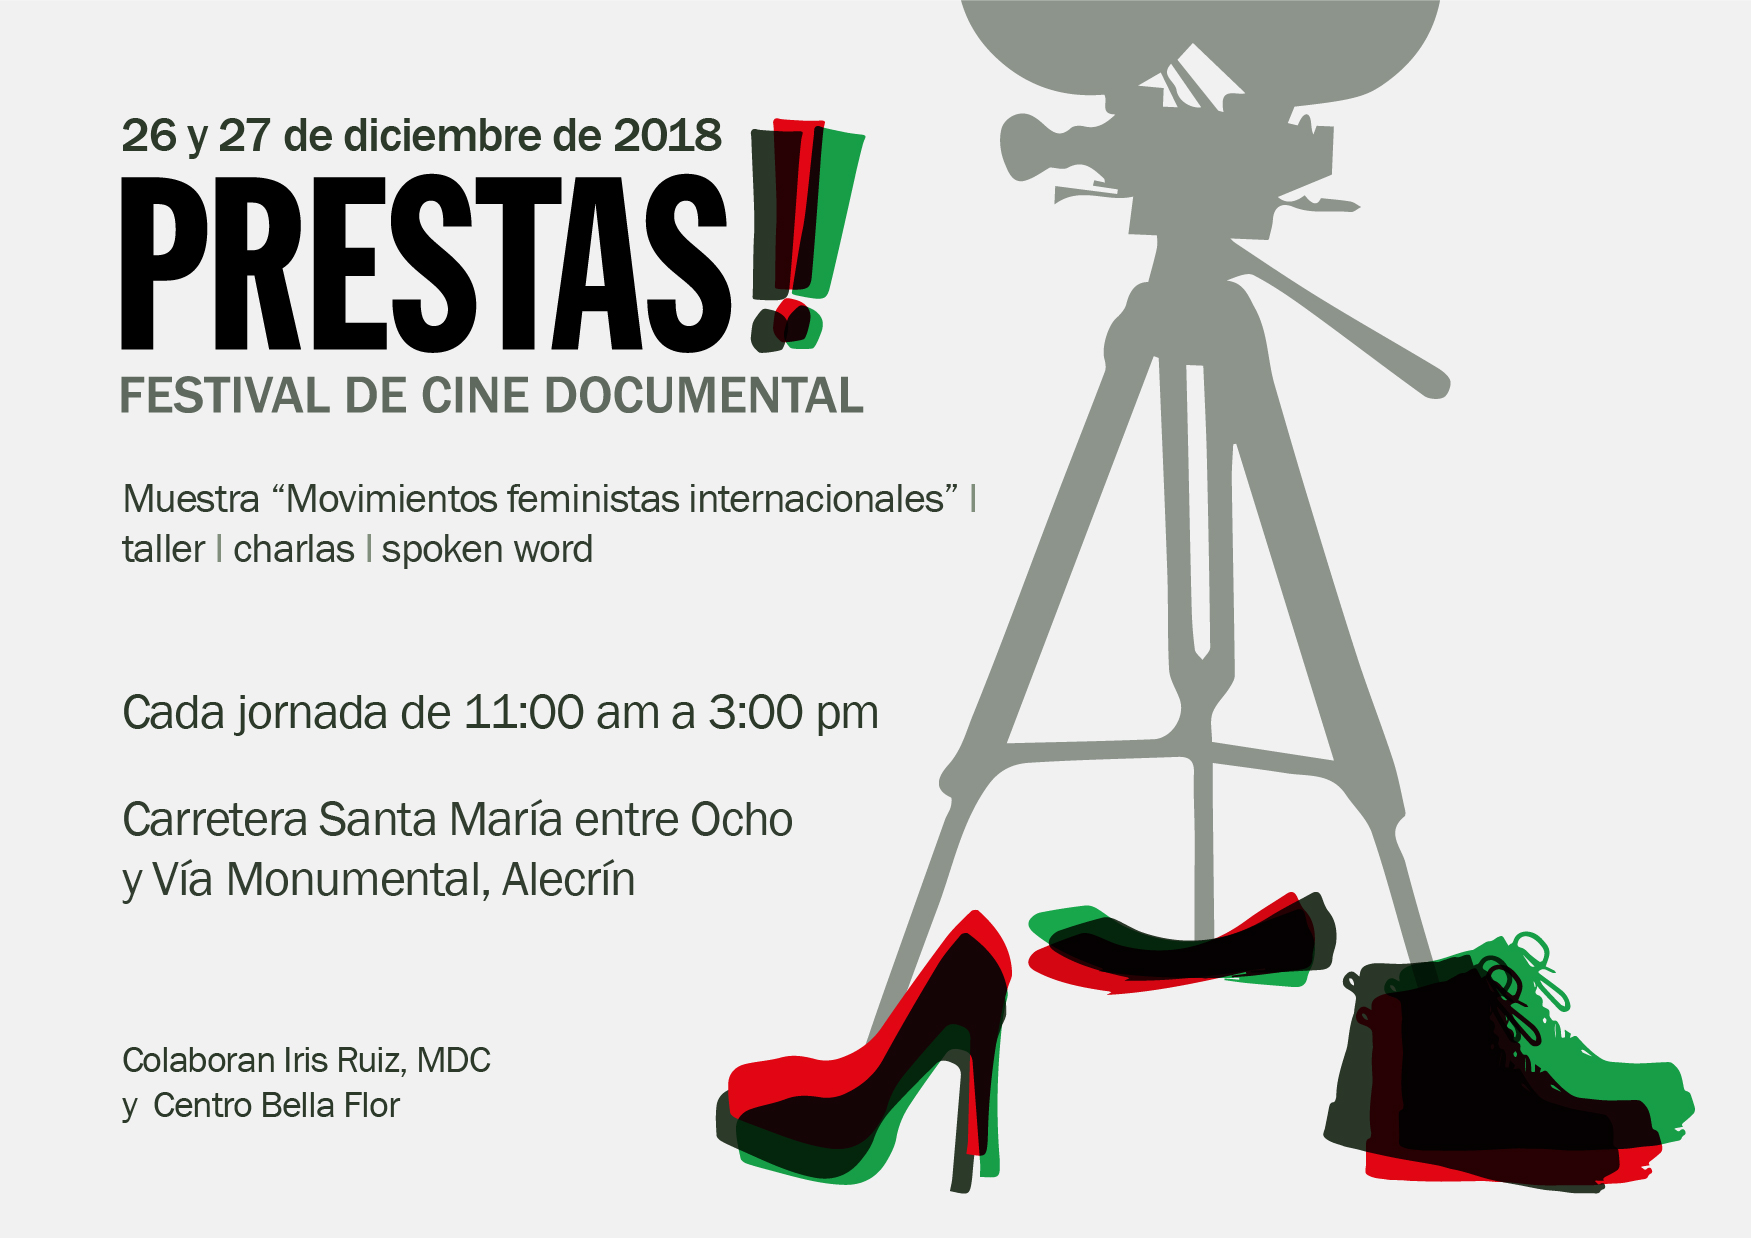 Primera edición del Festival de Cine Documental Prestas!!!